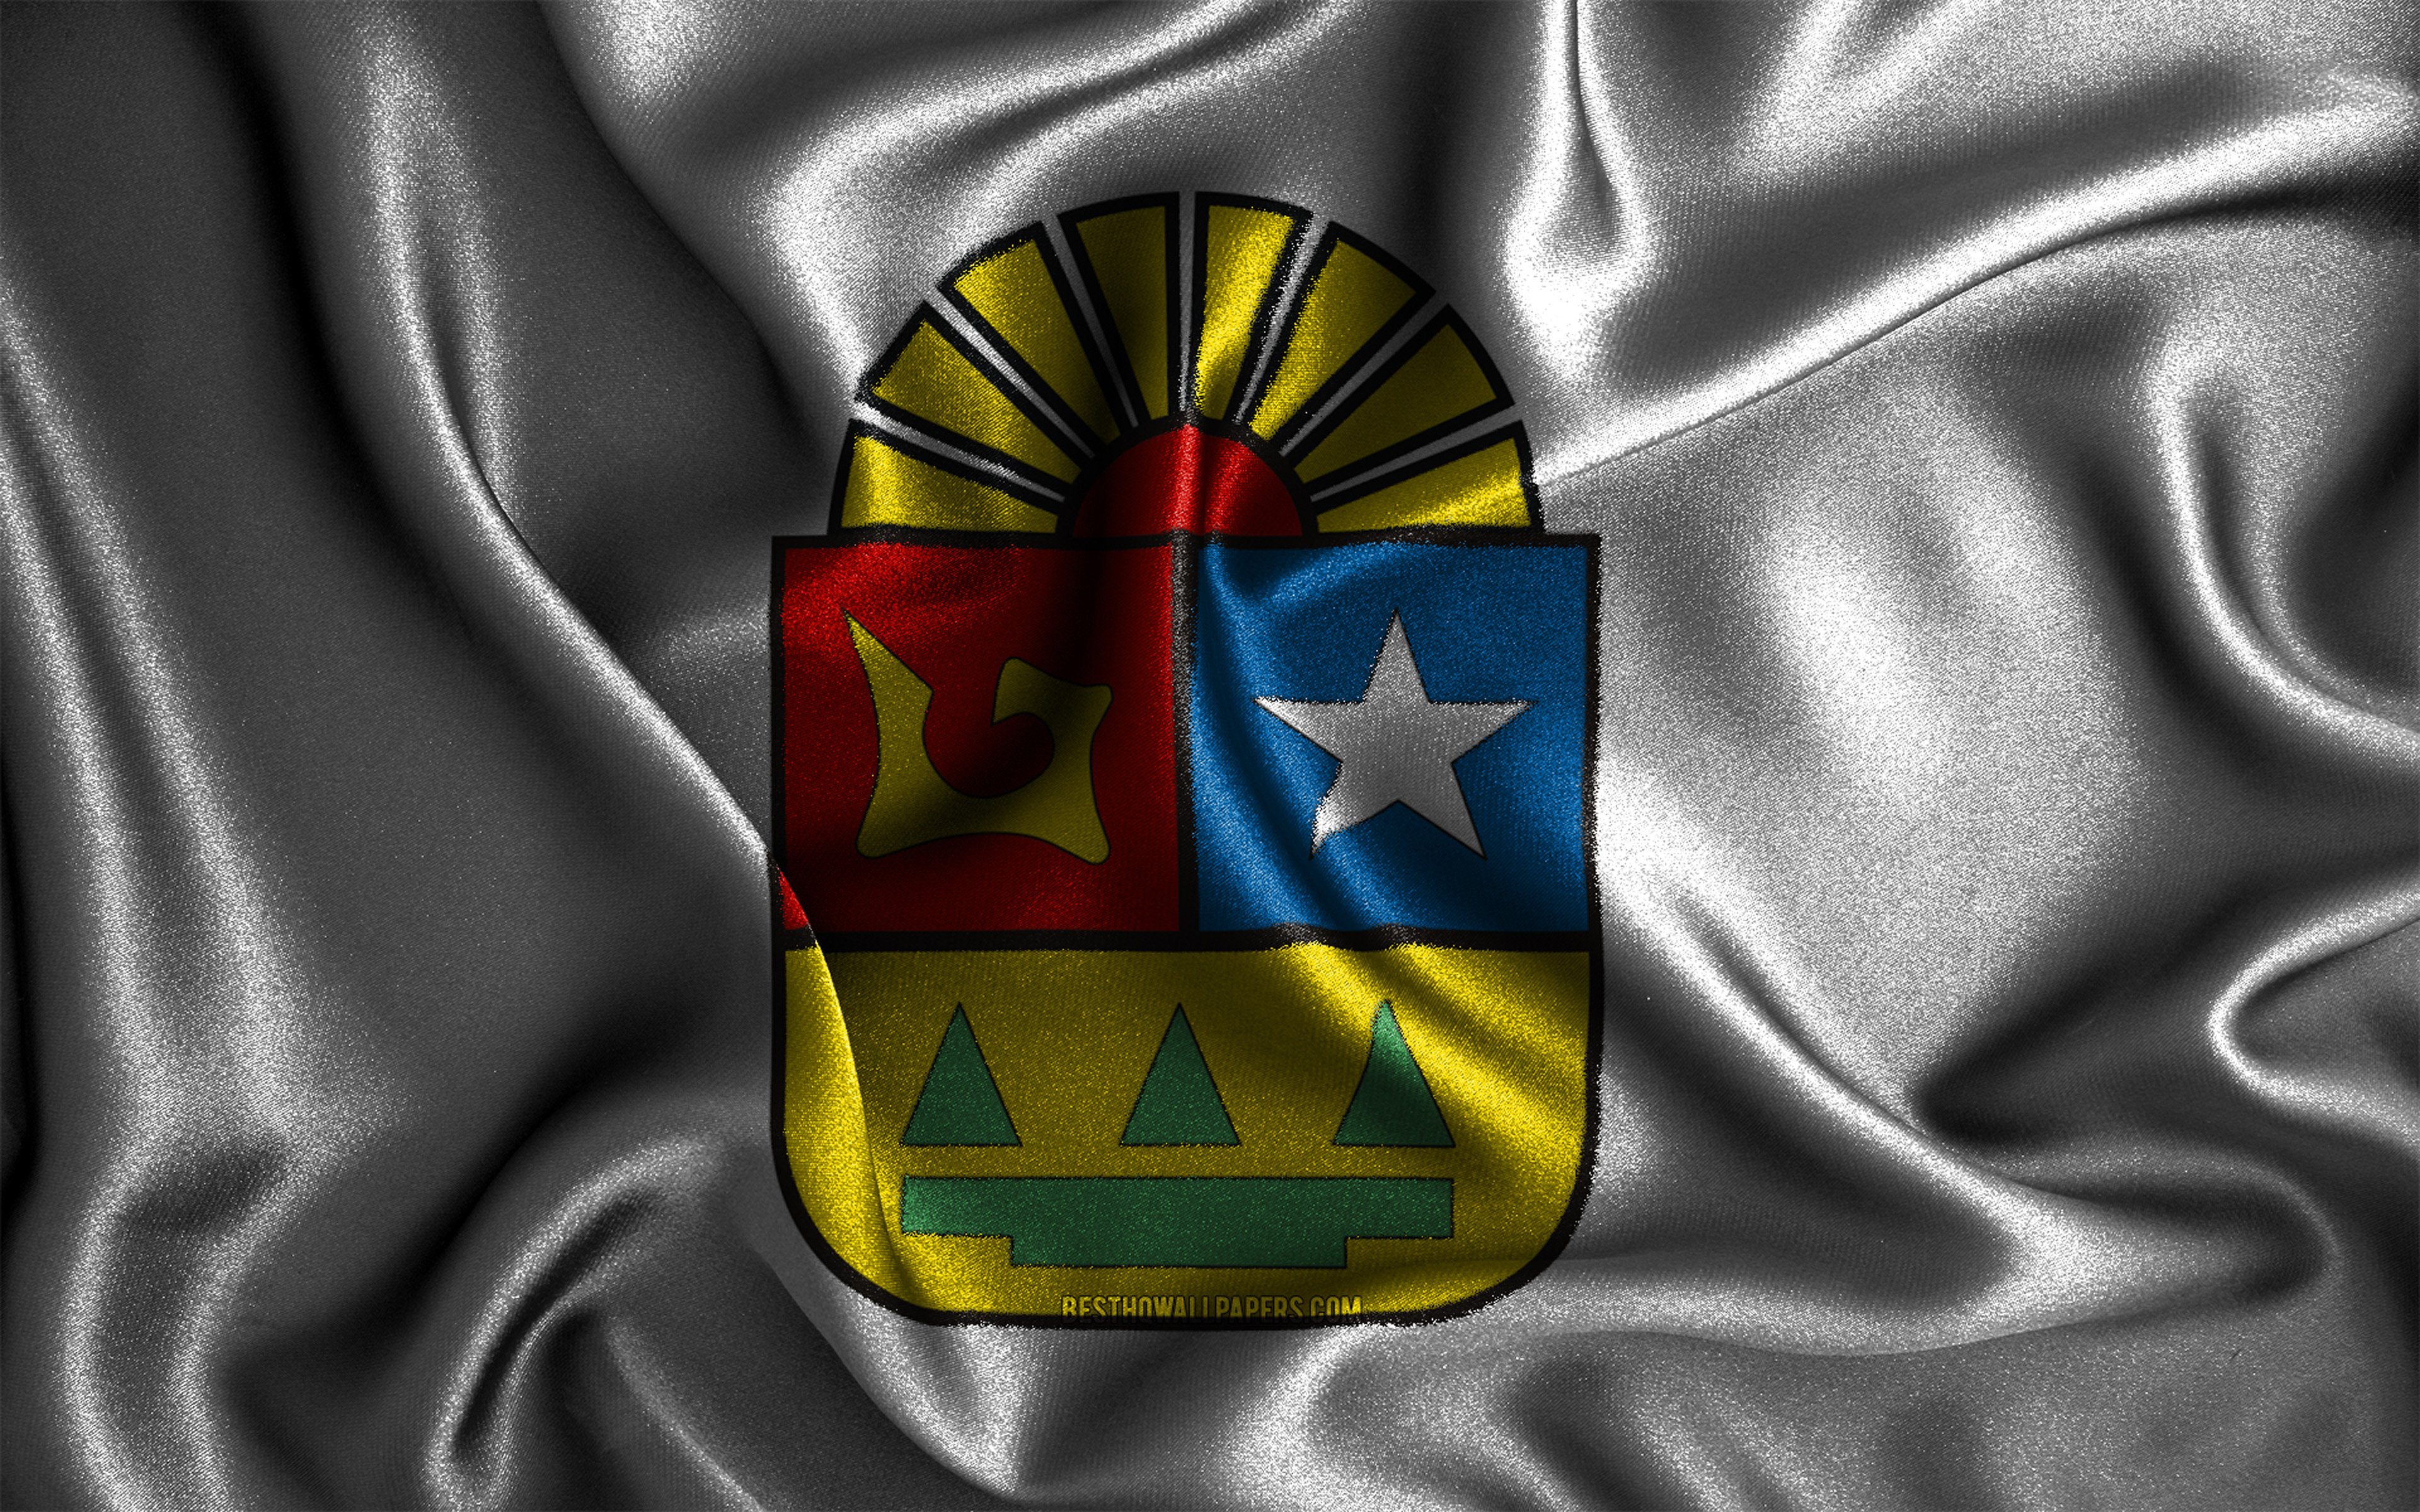 ダウンロード画像 キンタナ ロー 4k シルクの波状の旗 メキシコの州 キンタナローの日 ファブリックフラグ キンタナローの旗 3dアート 北アメリカ キンタナロー3dフラグ メキシコ 画面の解像度 3840x2400 壁紙デスクトップ上